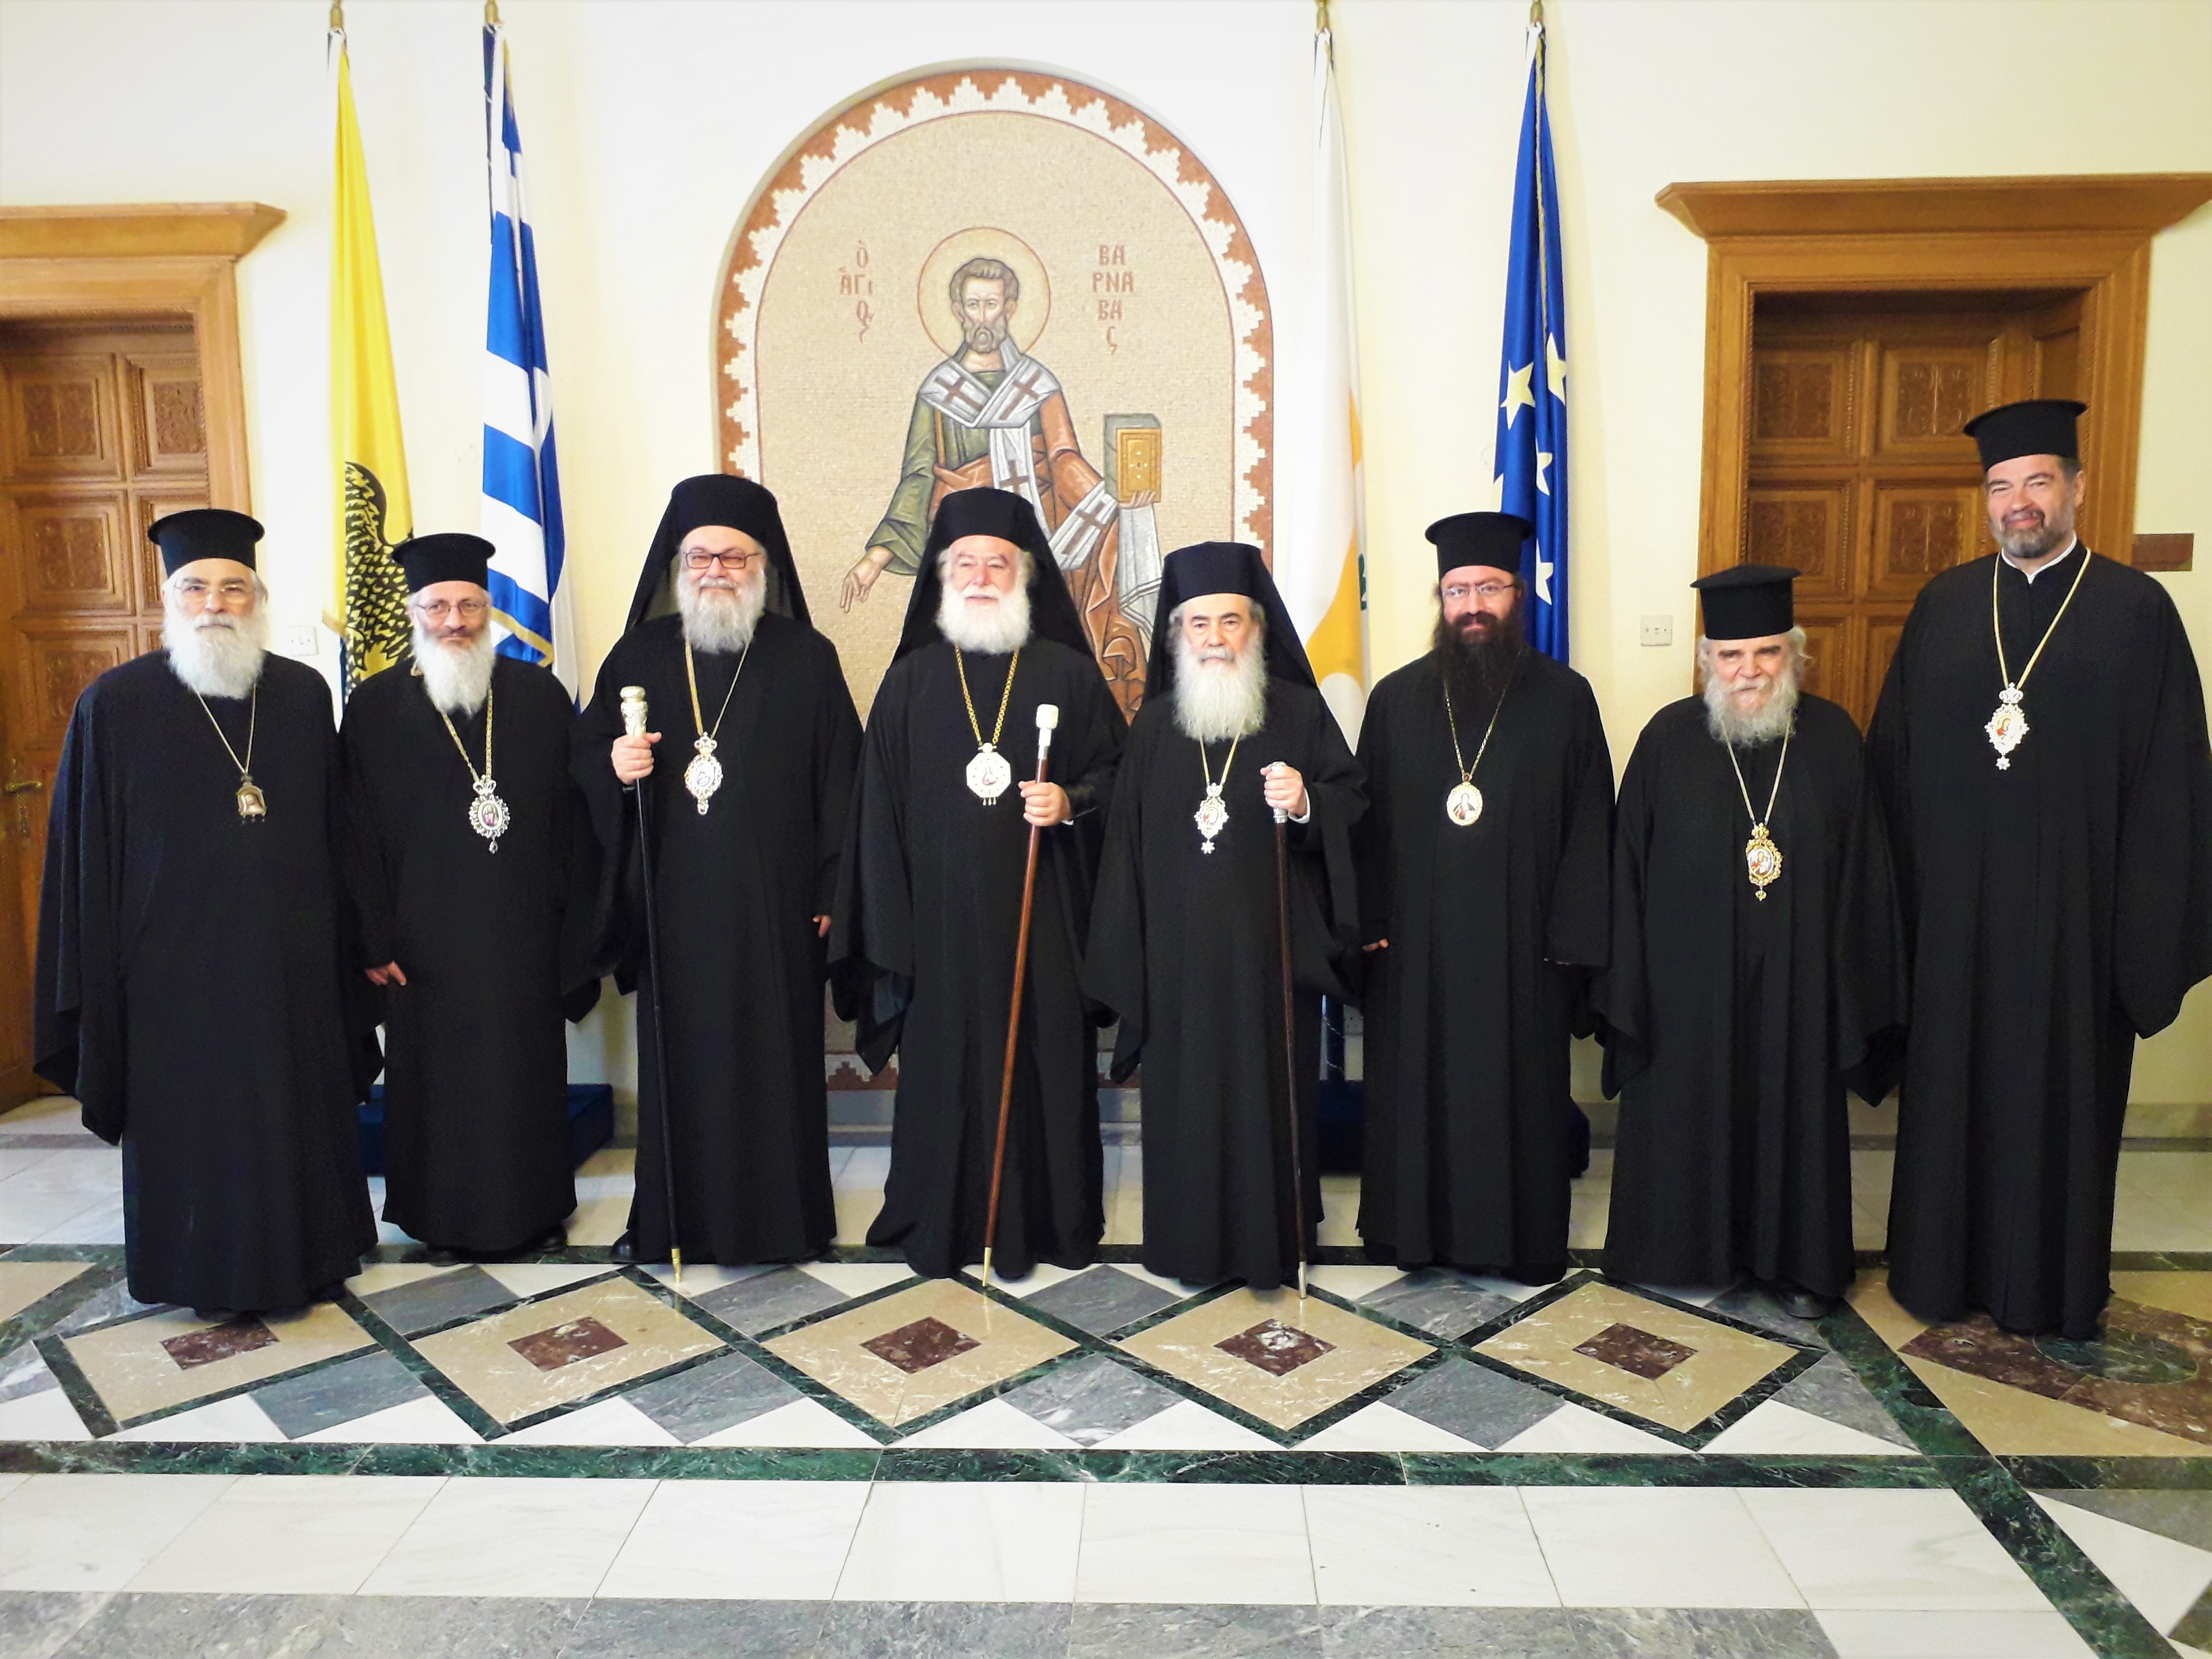 Συνάντηση των Προκαθήμενων των Ορθόδοξων Εκκλησιών Μέσης Ανατολής